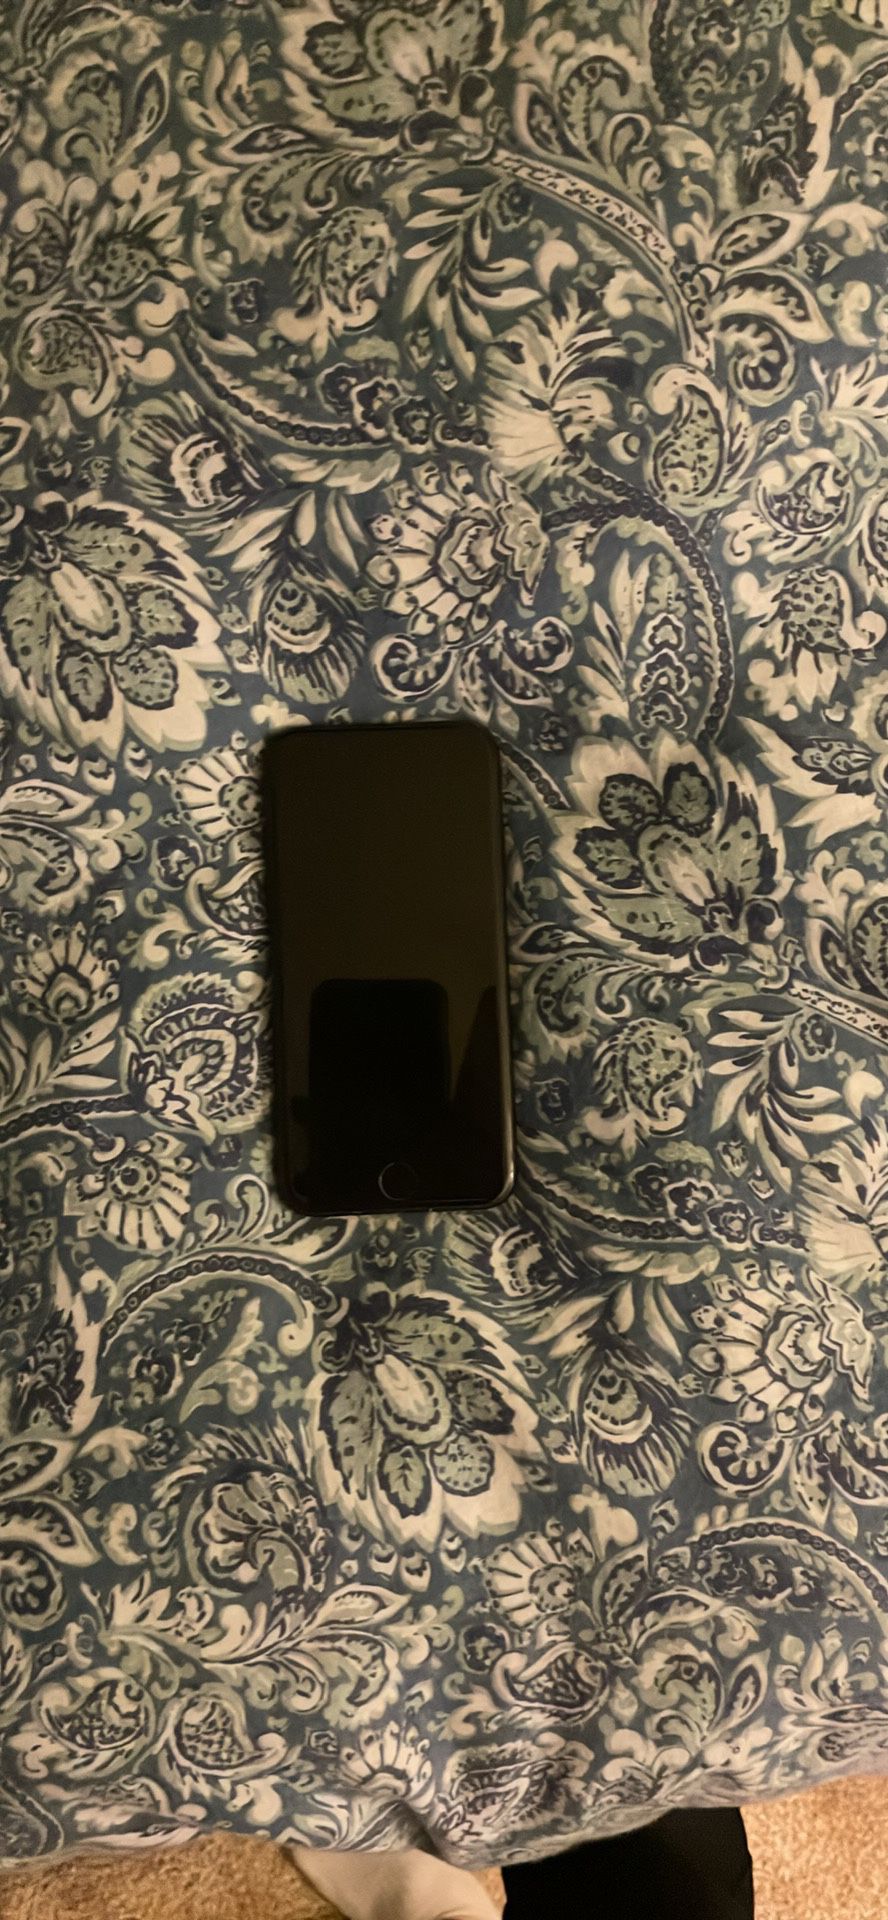 black iphone 6